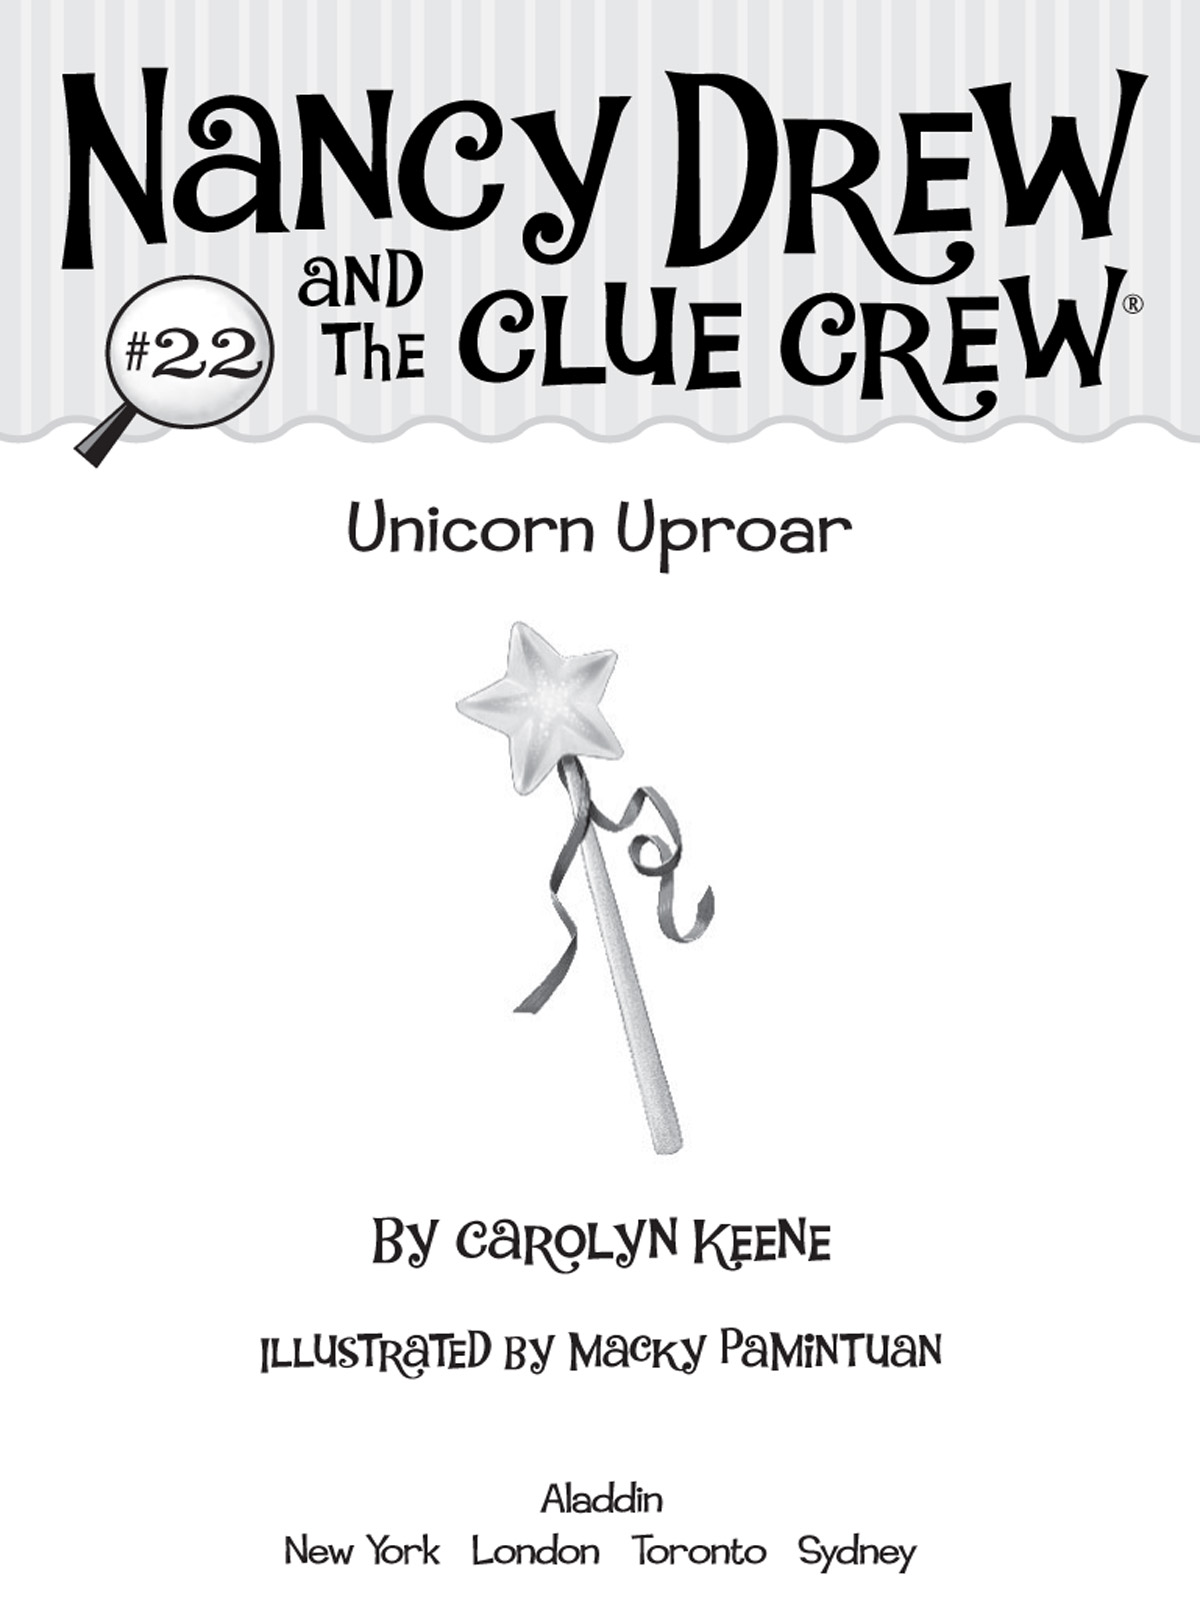 Unicorn Uproar (2009) by Carolyn Keene